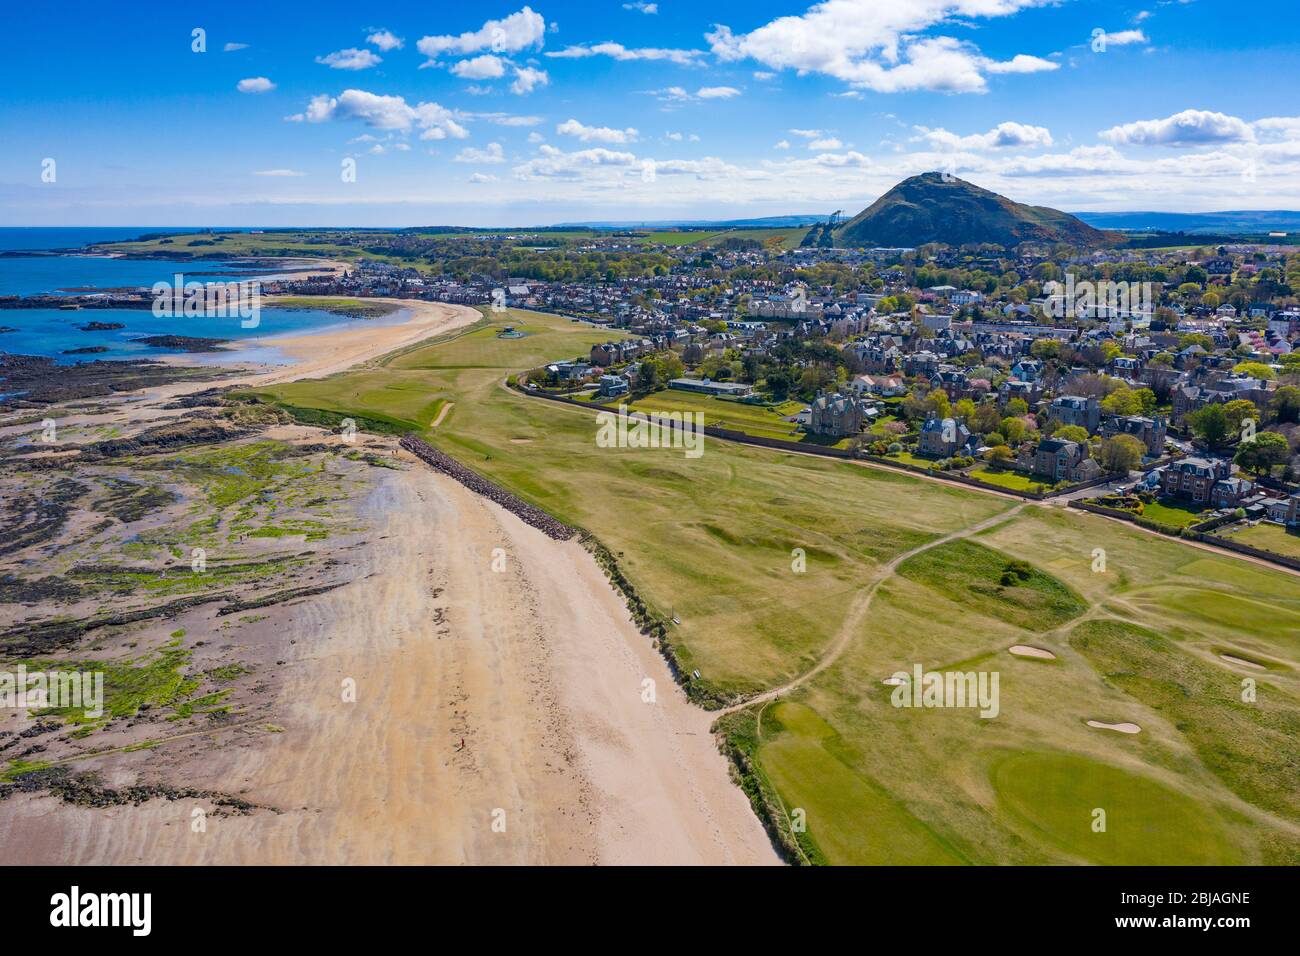 Vista aérea de la playa de North Berwick y del club de golf North Berwick, East Lothian, Escocia, Reino Unido Foto de stock